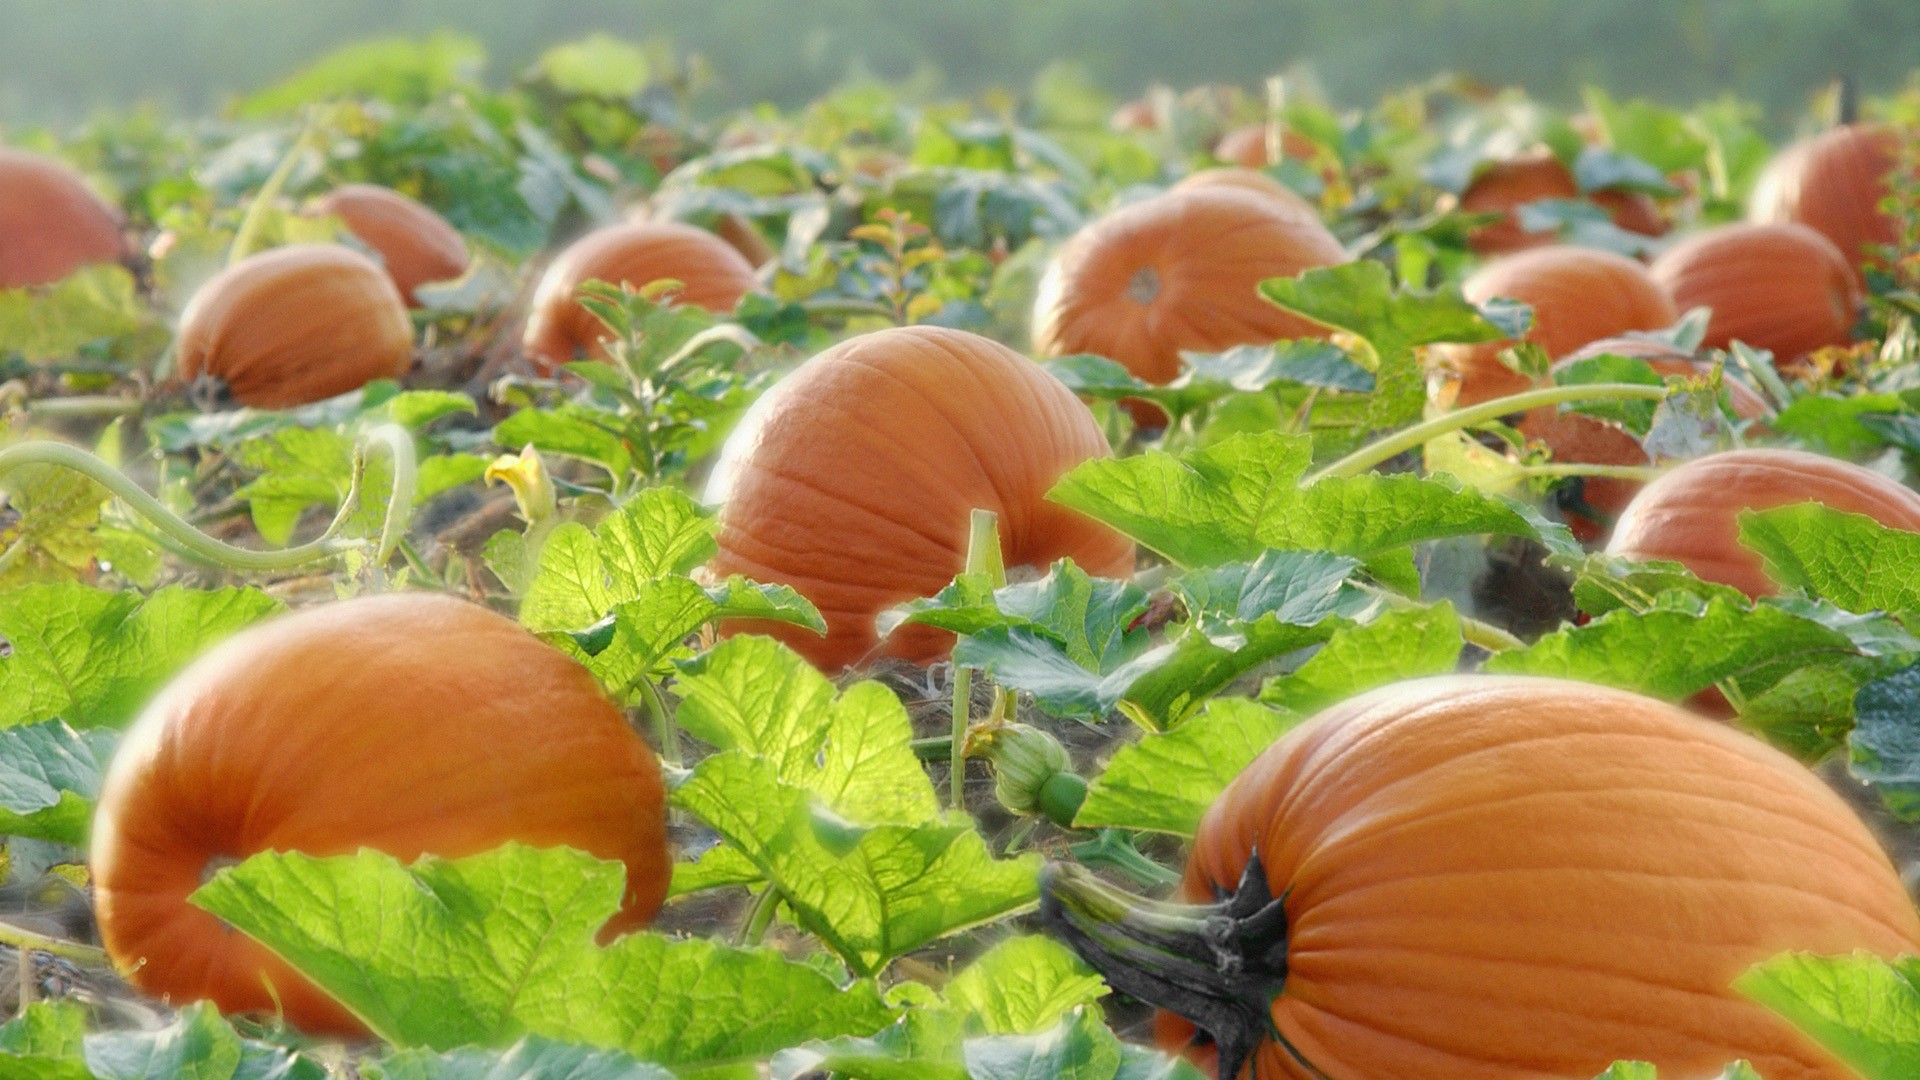 Nature___Seasons___Autumn_Pumpkin_ripens_on_the_field_043772_.jpg